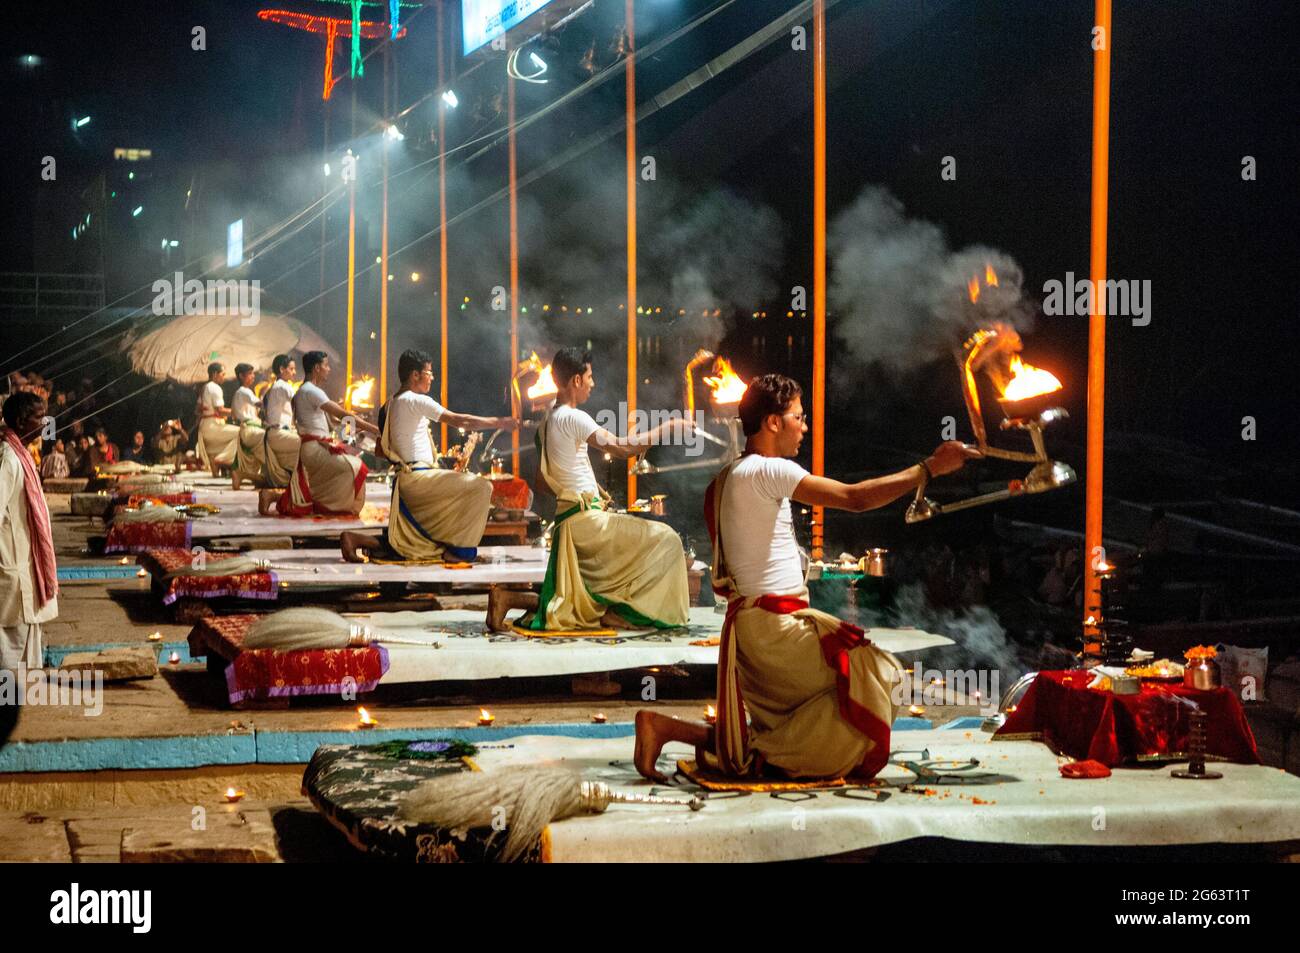 Die nächtliche ganga aanti Zeremonie in Dashashwamedh Ghat mit Priestern, rituellen Deepam Aligt und vielen Touristen am Fluss ganges, Varanasi, Indien, statt Stockfoto